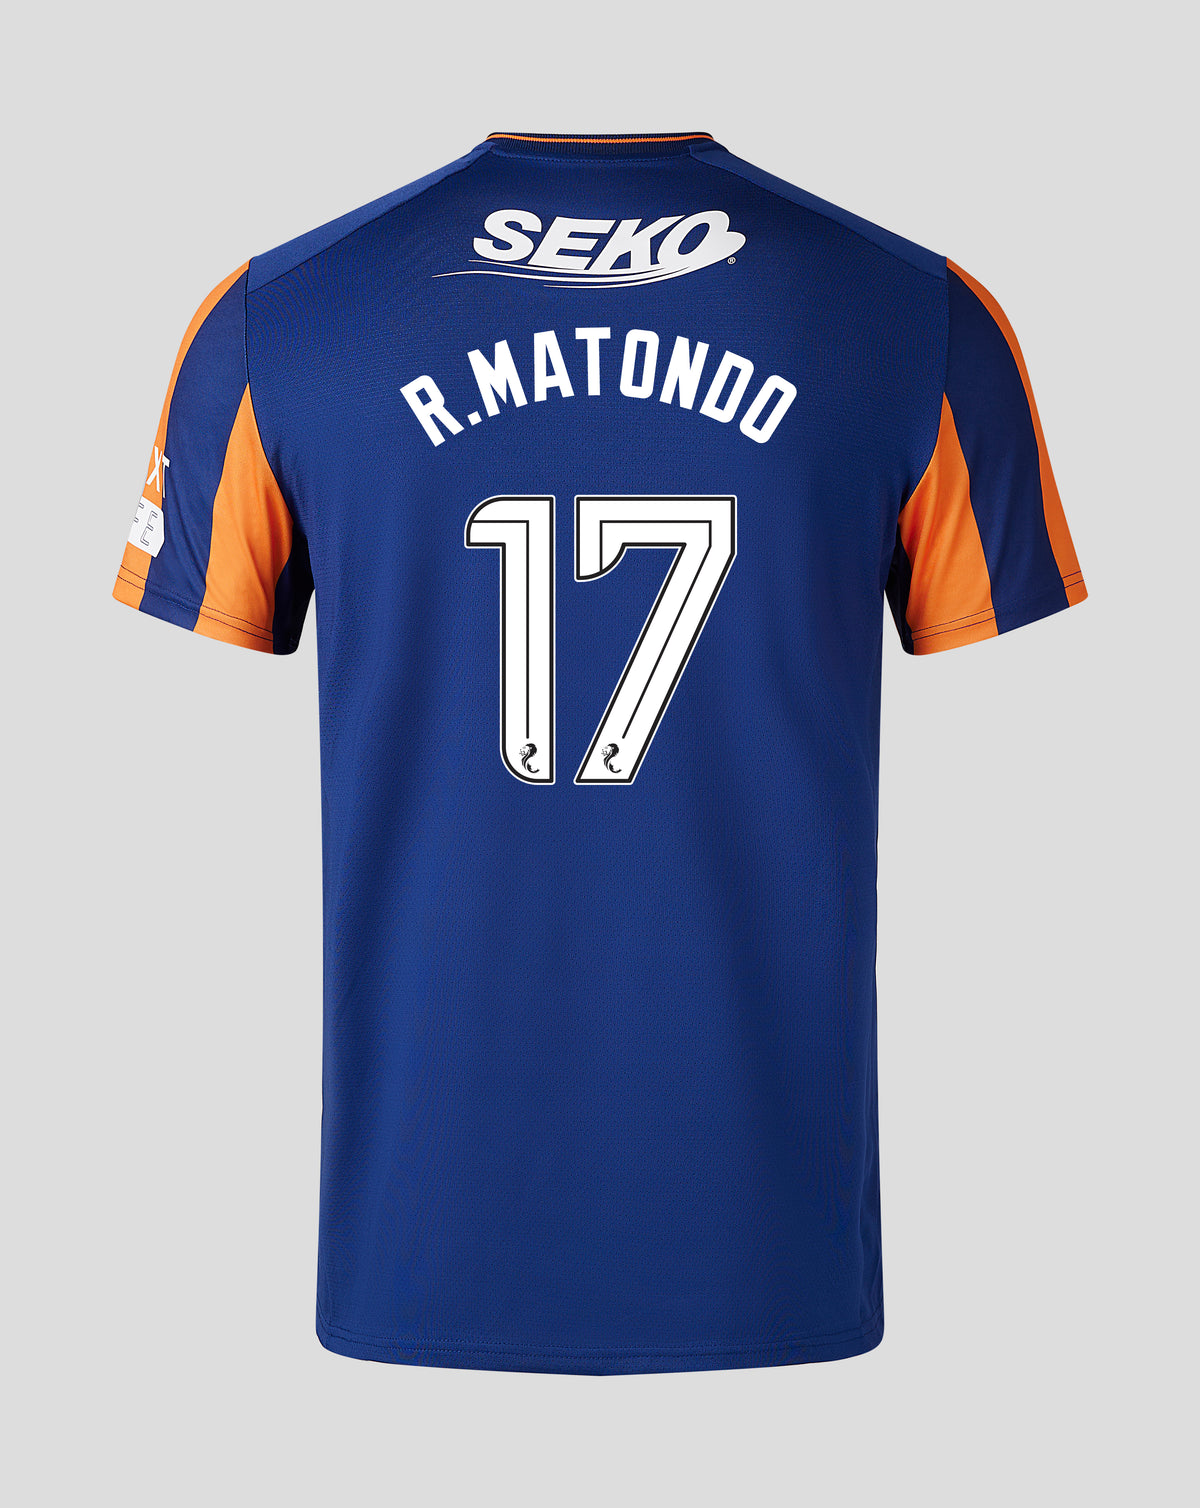 R.Matondo - Third Pro